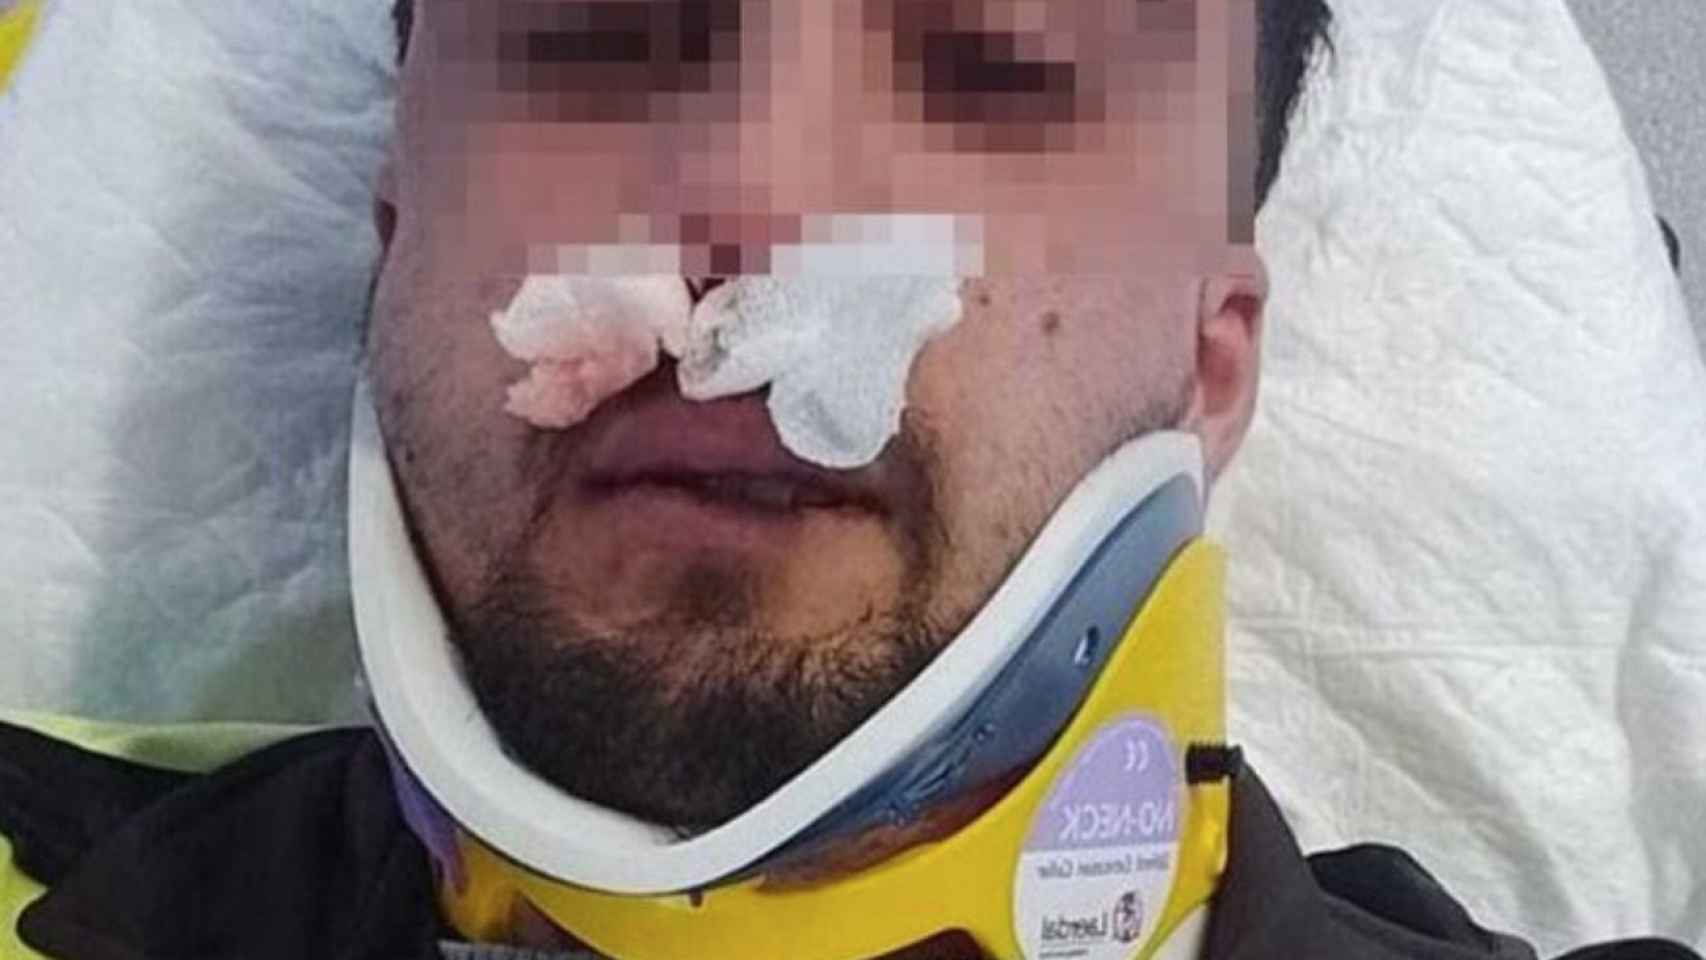 Vigilante agredido en una paliza grupal el jueves en Mataró / CAPGRÒS.COM